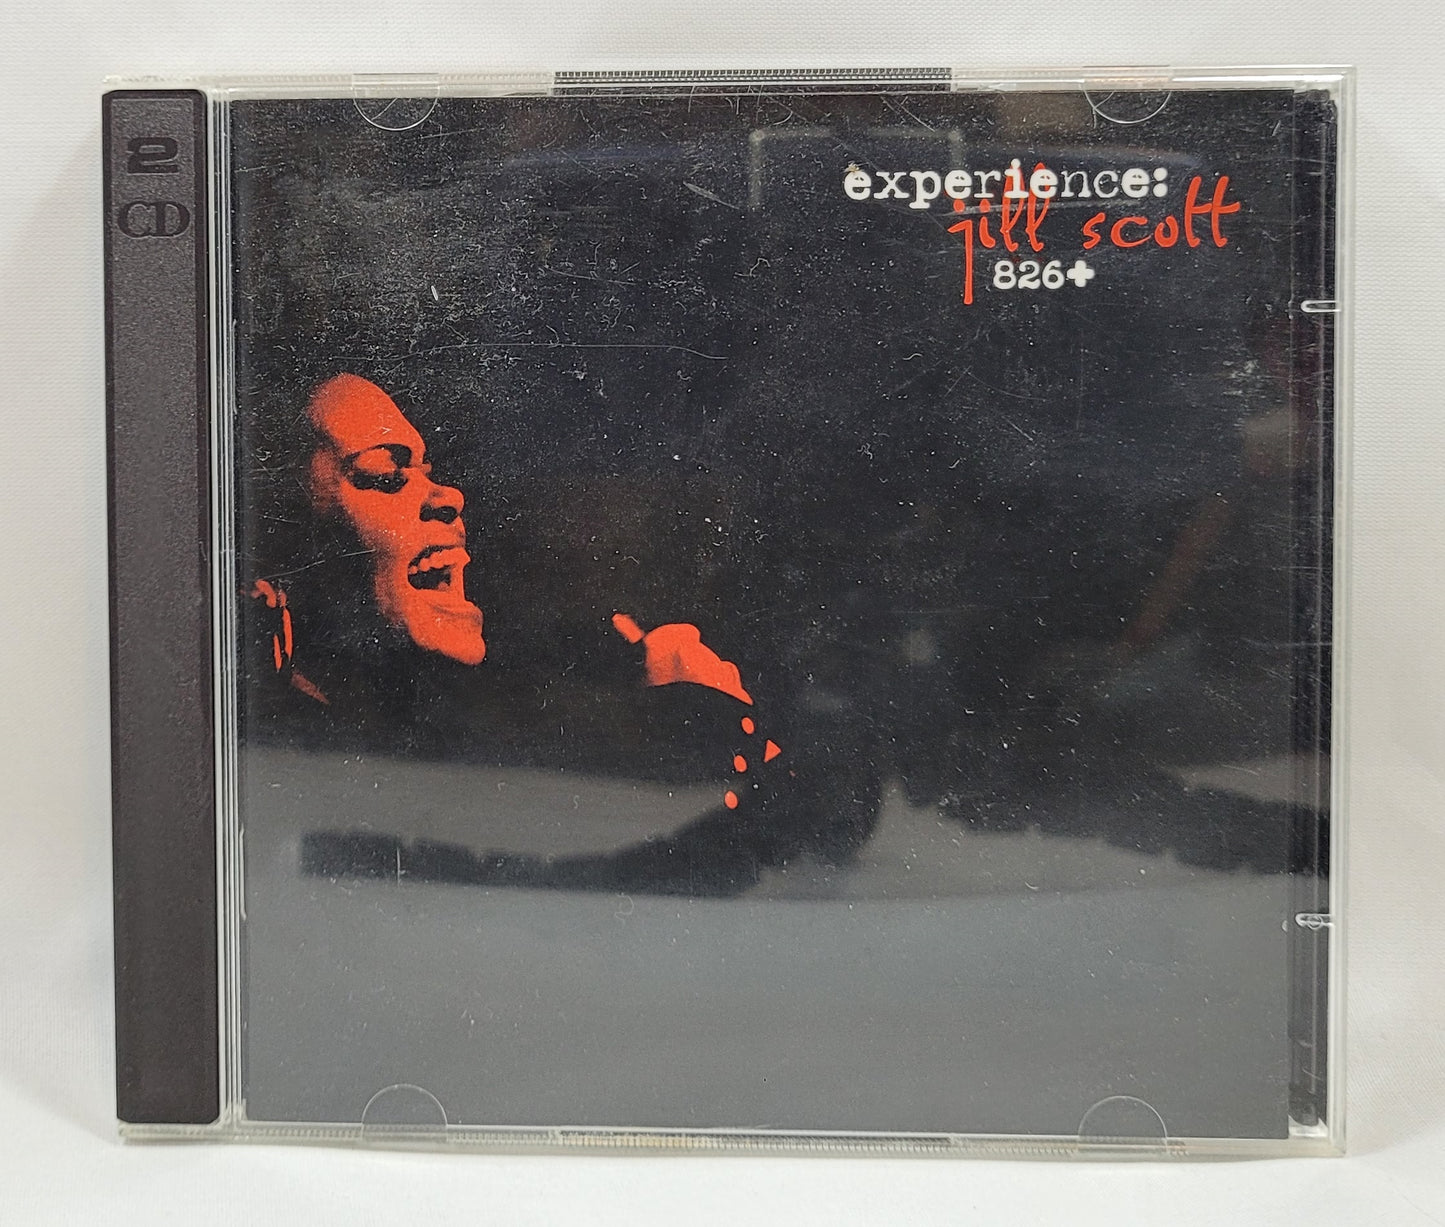 Jill Scott - Experience: Jill Scott 826+ [CD]